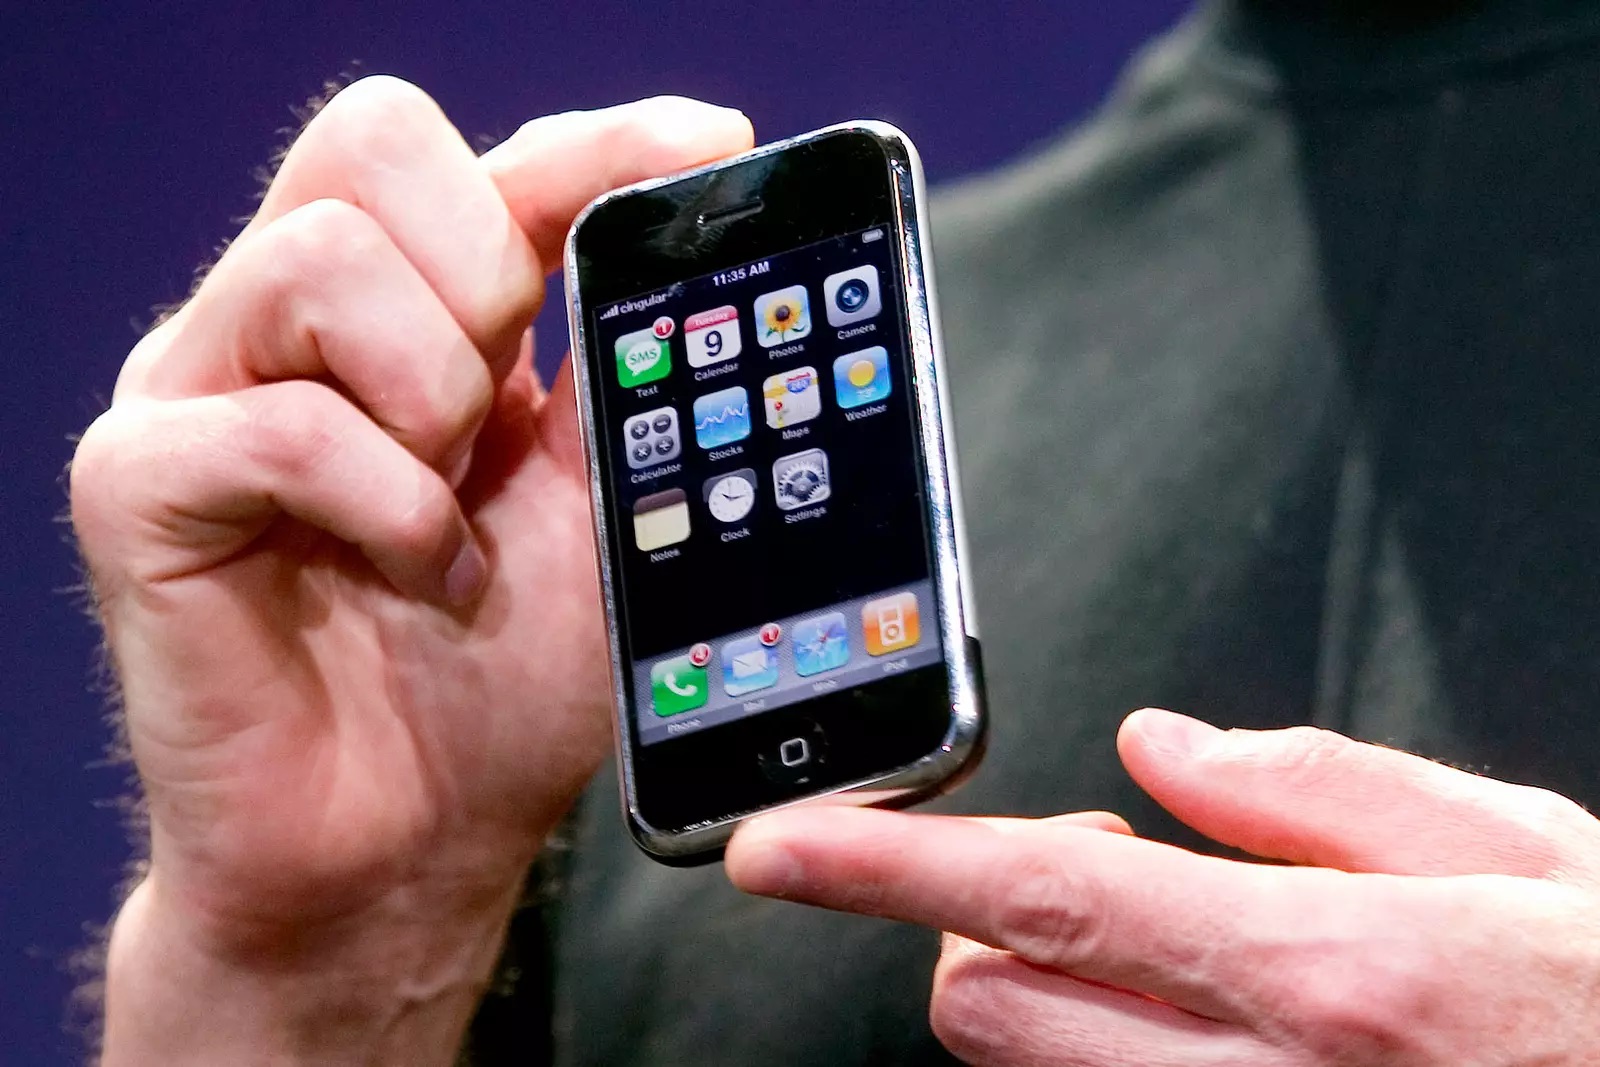 Zapieczętowany, nigdy nie używany: pierwszy iPhone sprzedany na aukcji za 55 000 dolarów